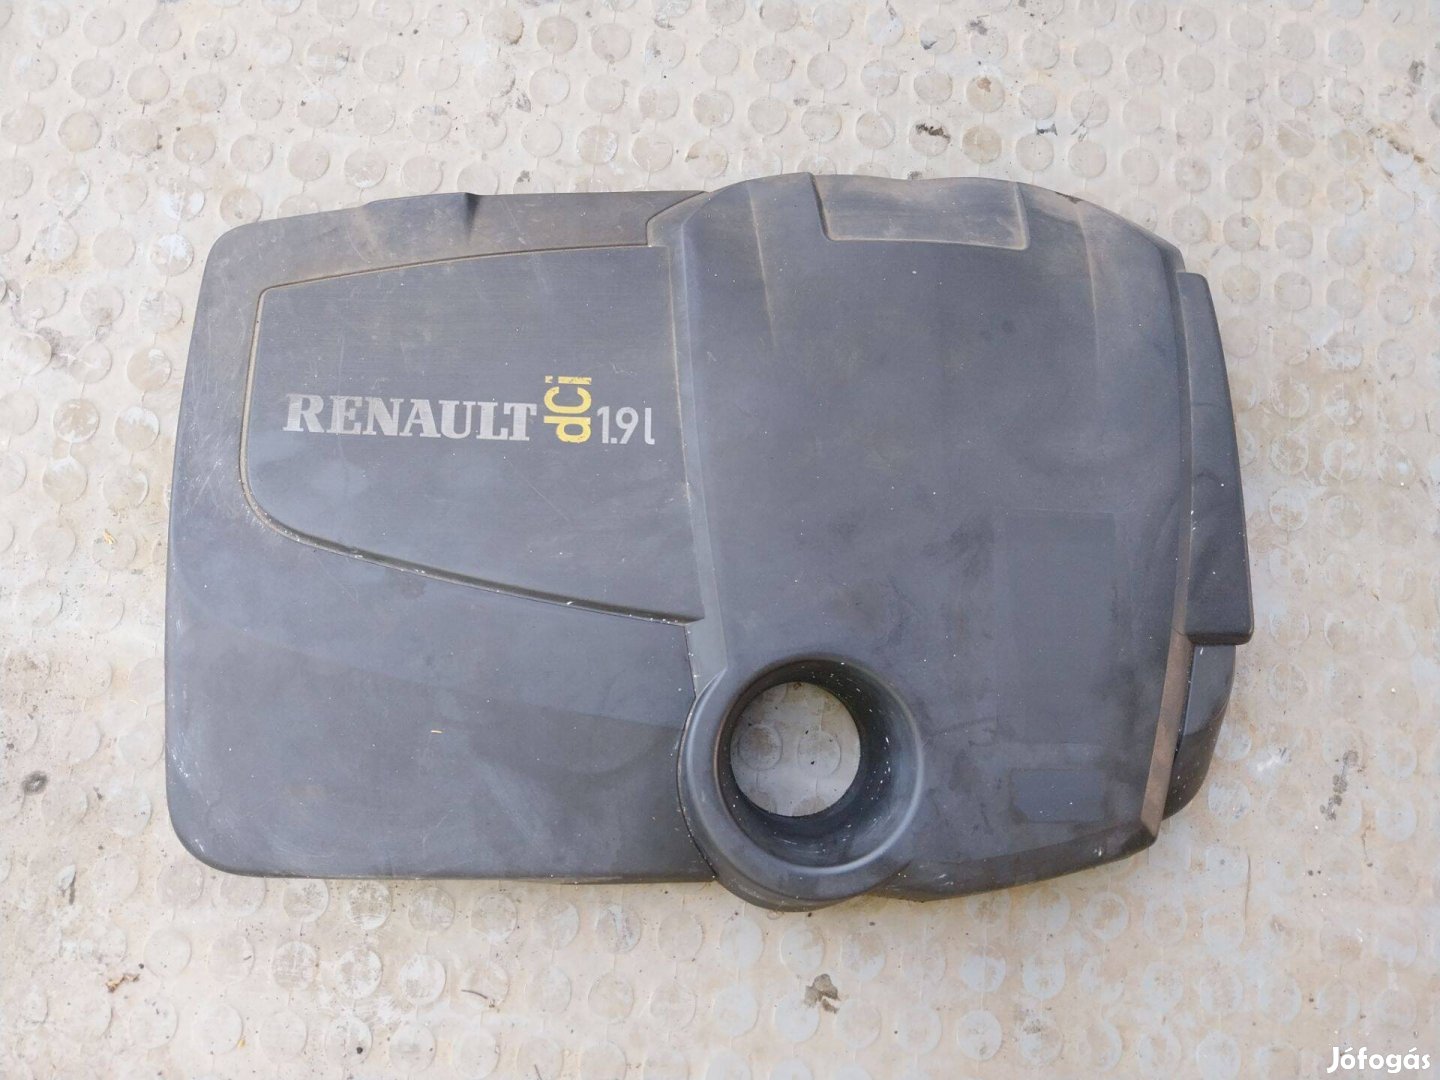 Renault Mégane 2,Scénic 2. 1.9 dci motor burkolat eladók